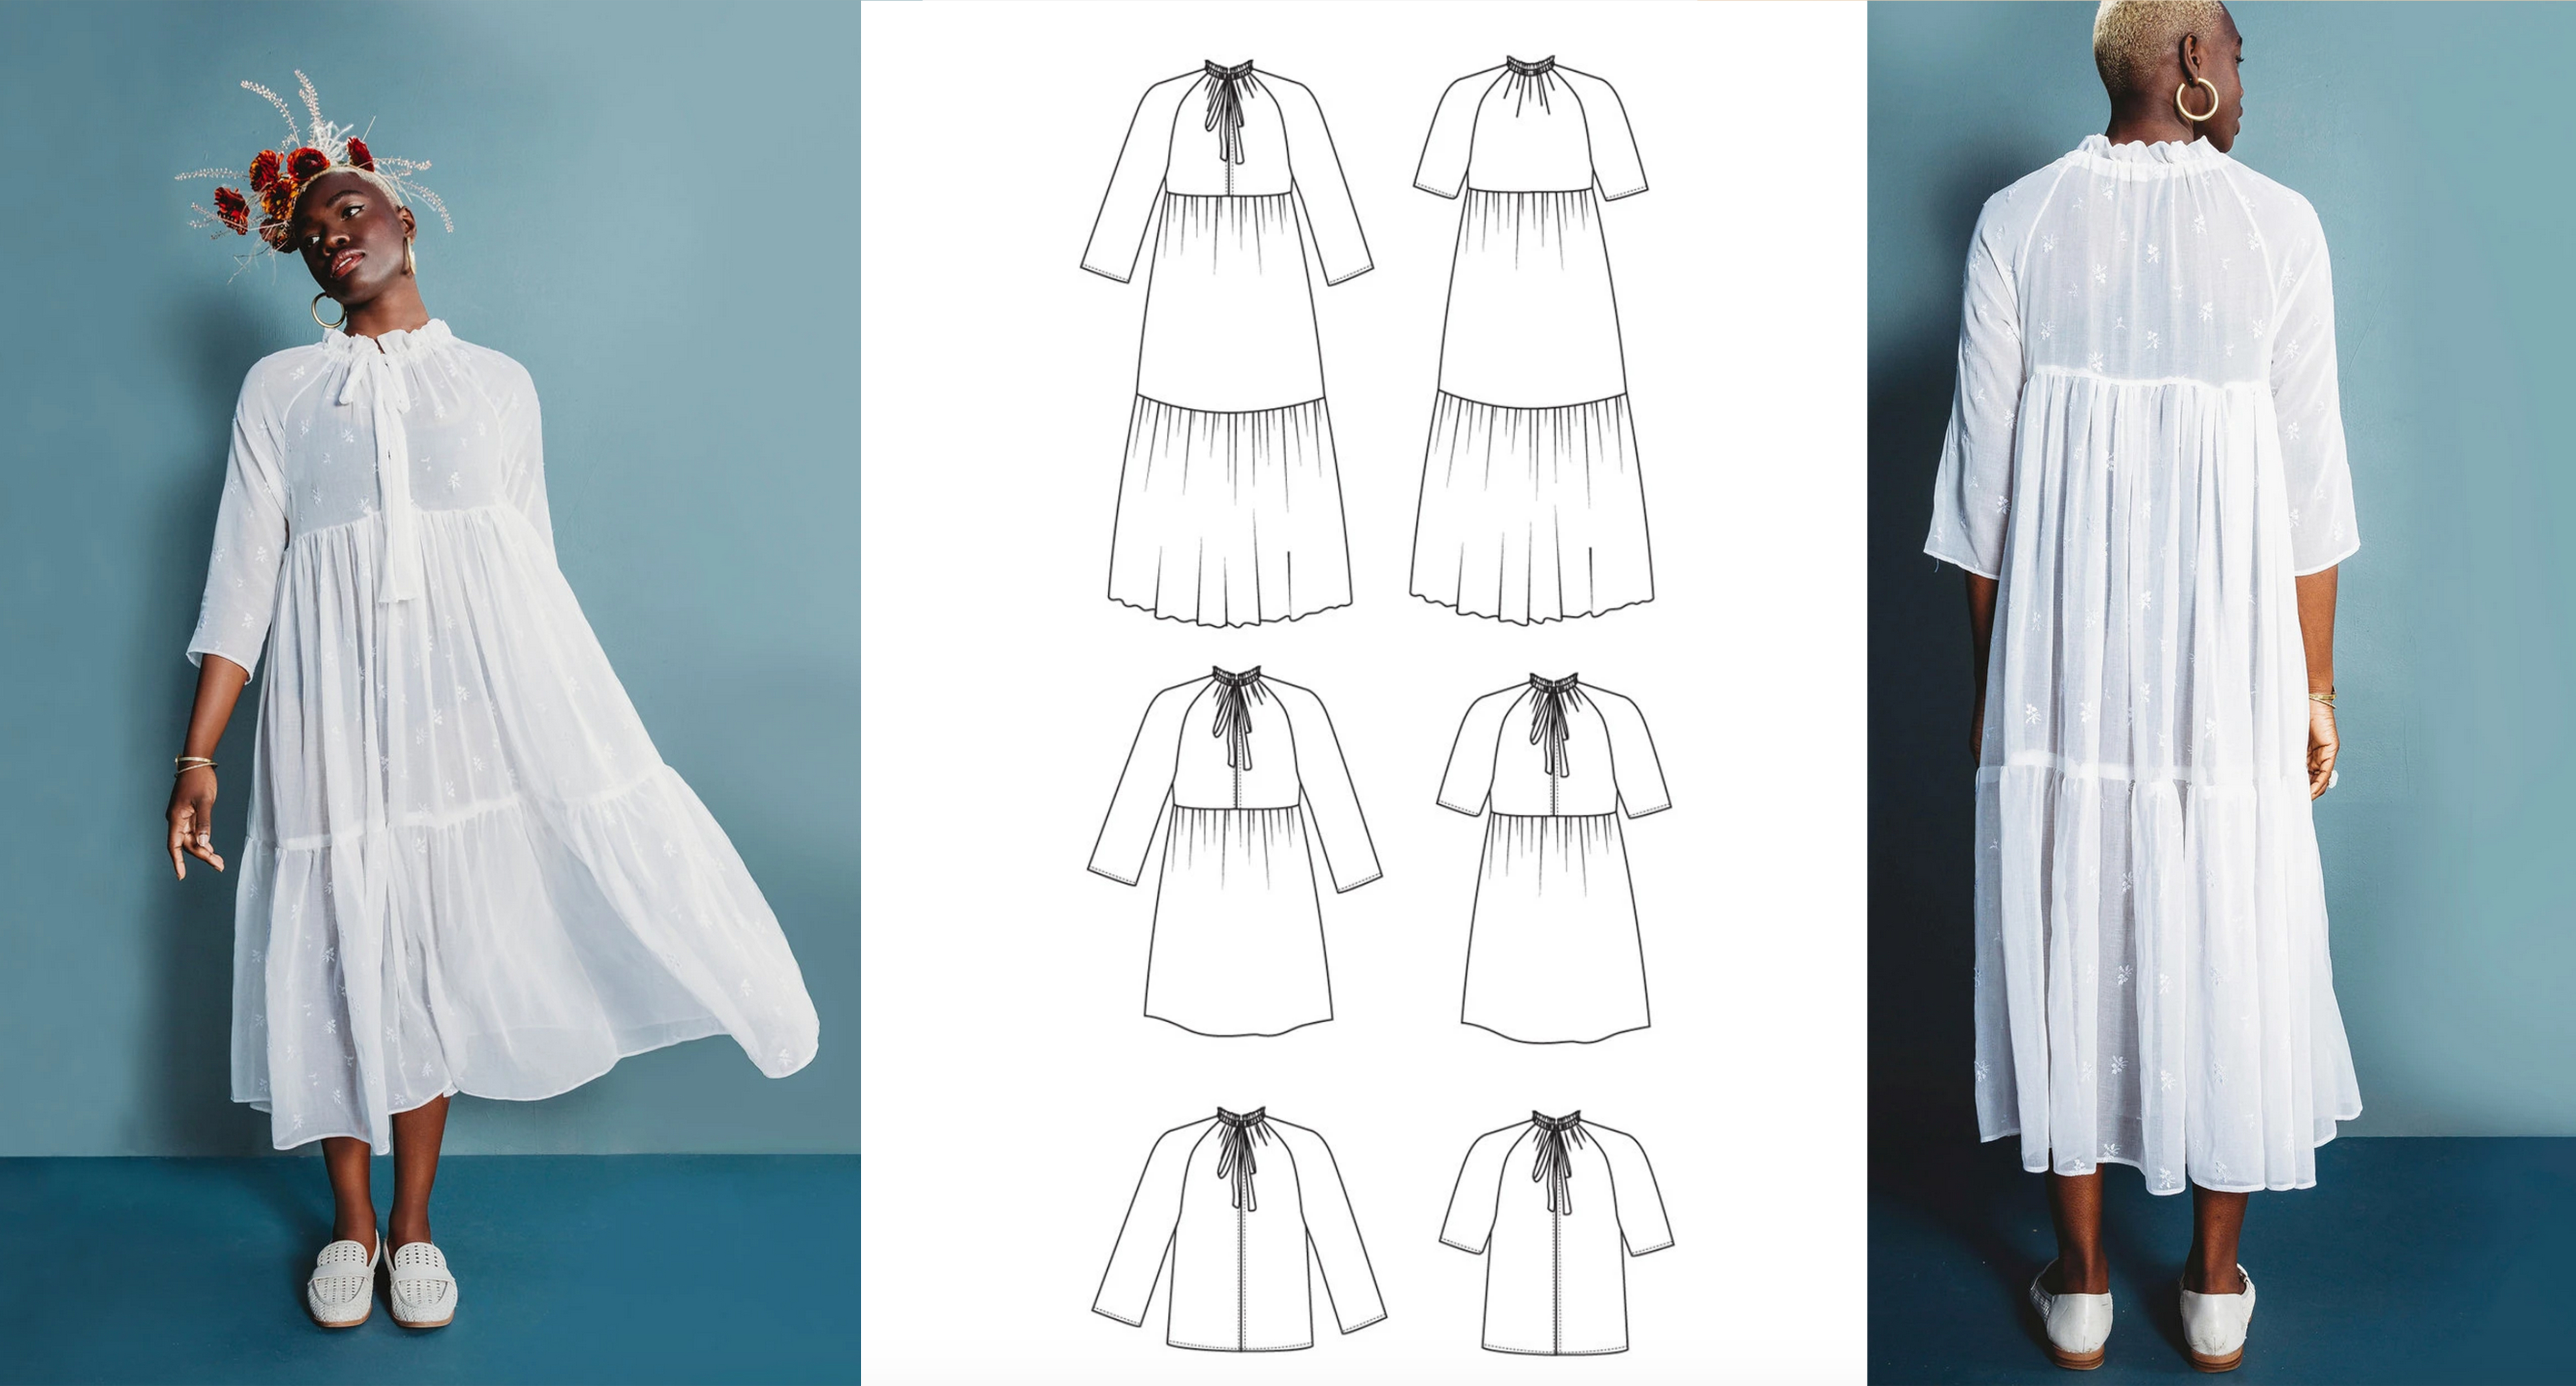 Petite fabrique de rêves - Patrons de couture gratuits: Patron et  instructions de couture gratuits : T-shirt manches longues femme